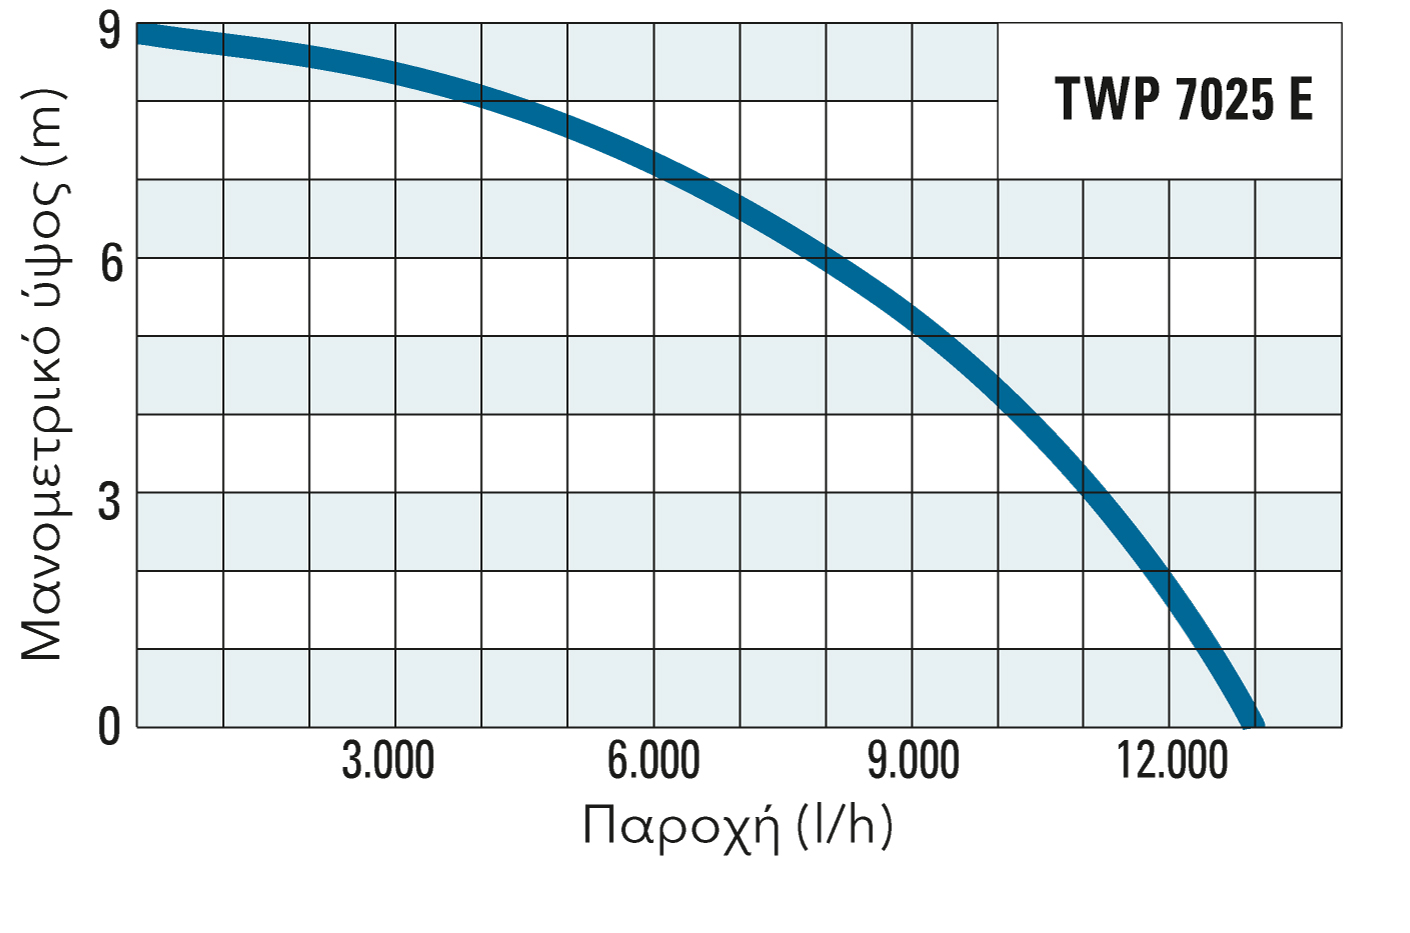 Μανομετρικό ύψος και παροχή της TWP 7025 E